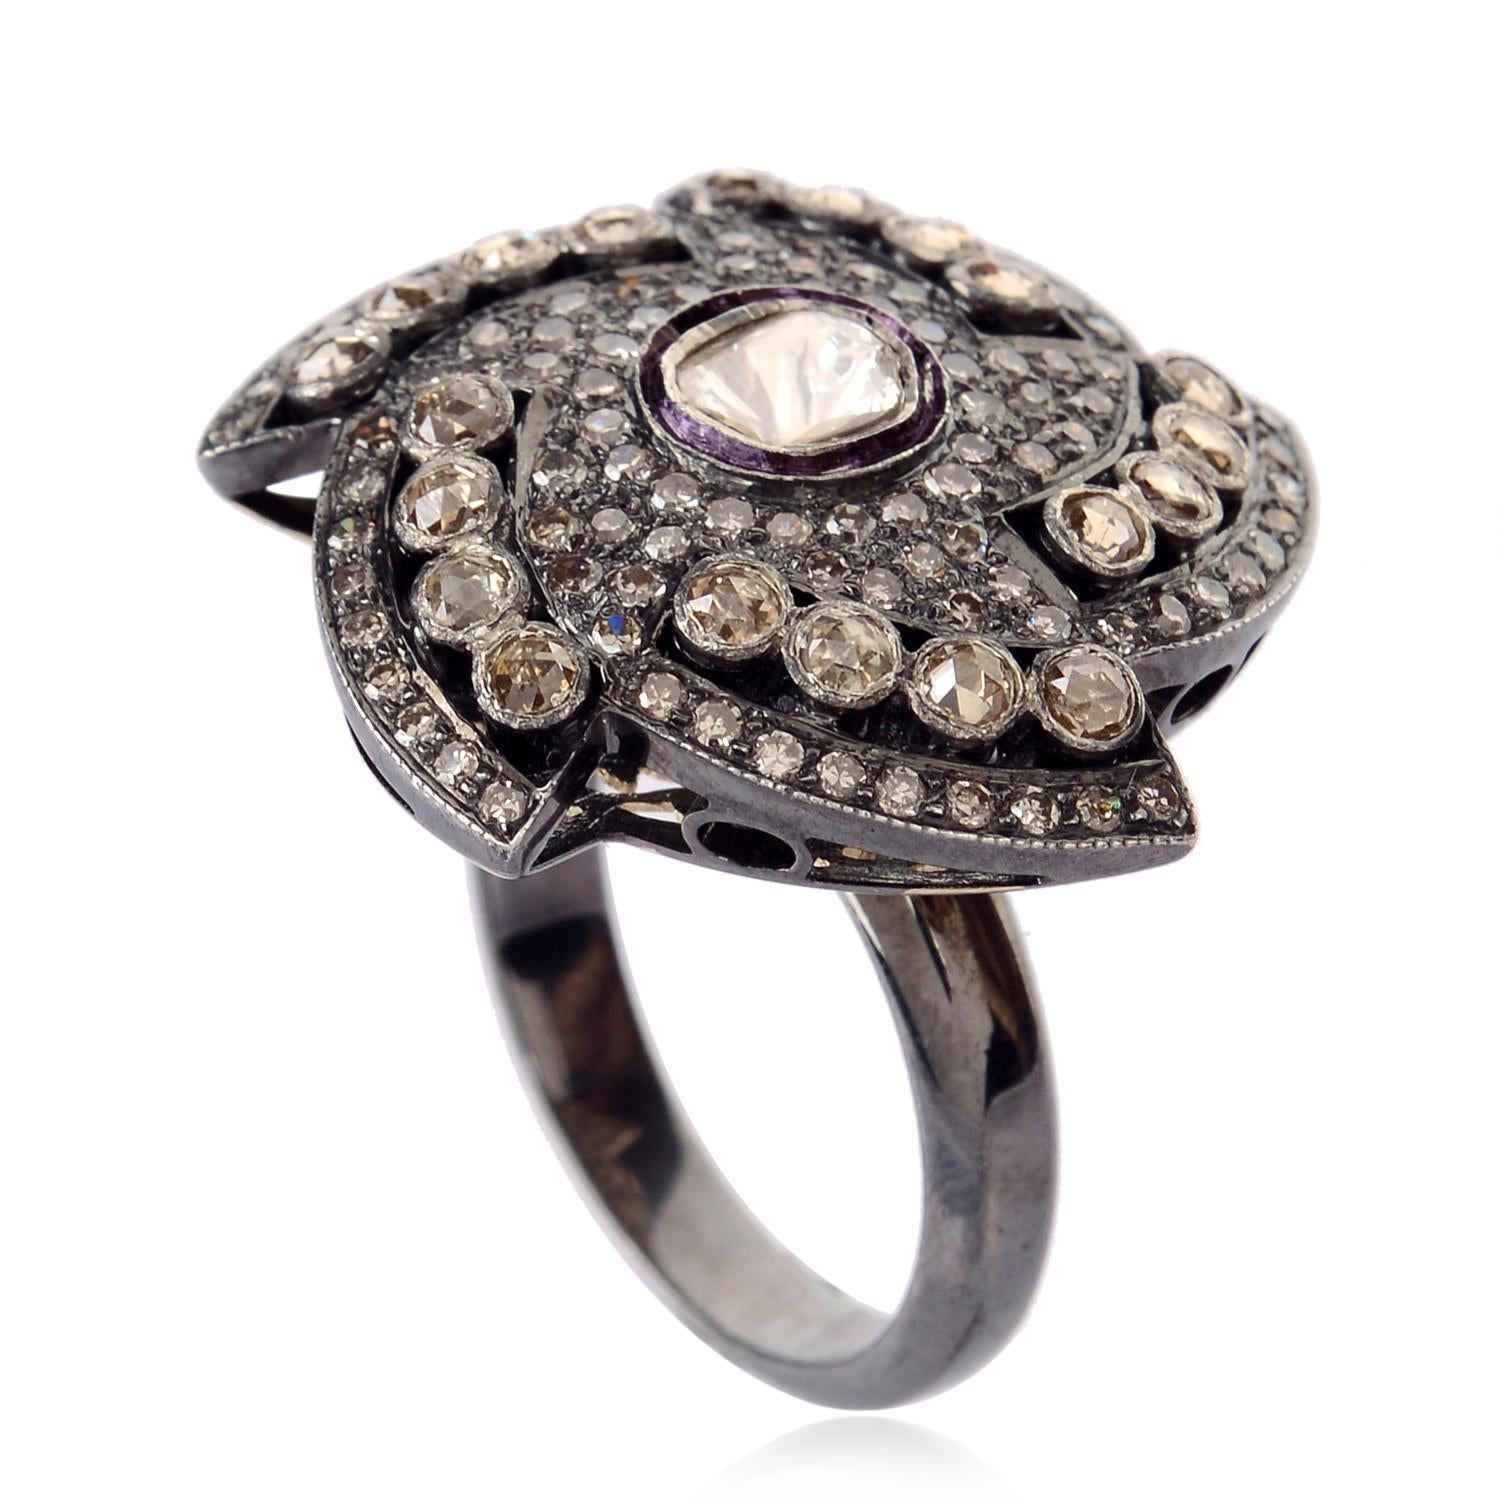 Dieser Chakra-Diamantring mit Diamantbesatz in Silber und Gold sieht frech aus und ist süß. 

Ringgröße: 7 (kann angepasst werden)

14kt Gold: 2,7g
Diamant: 2,25cts
Silber: 5,48g
